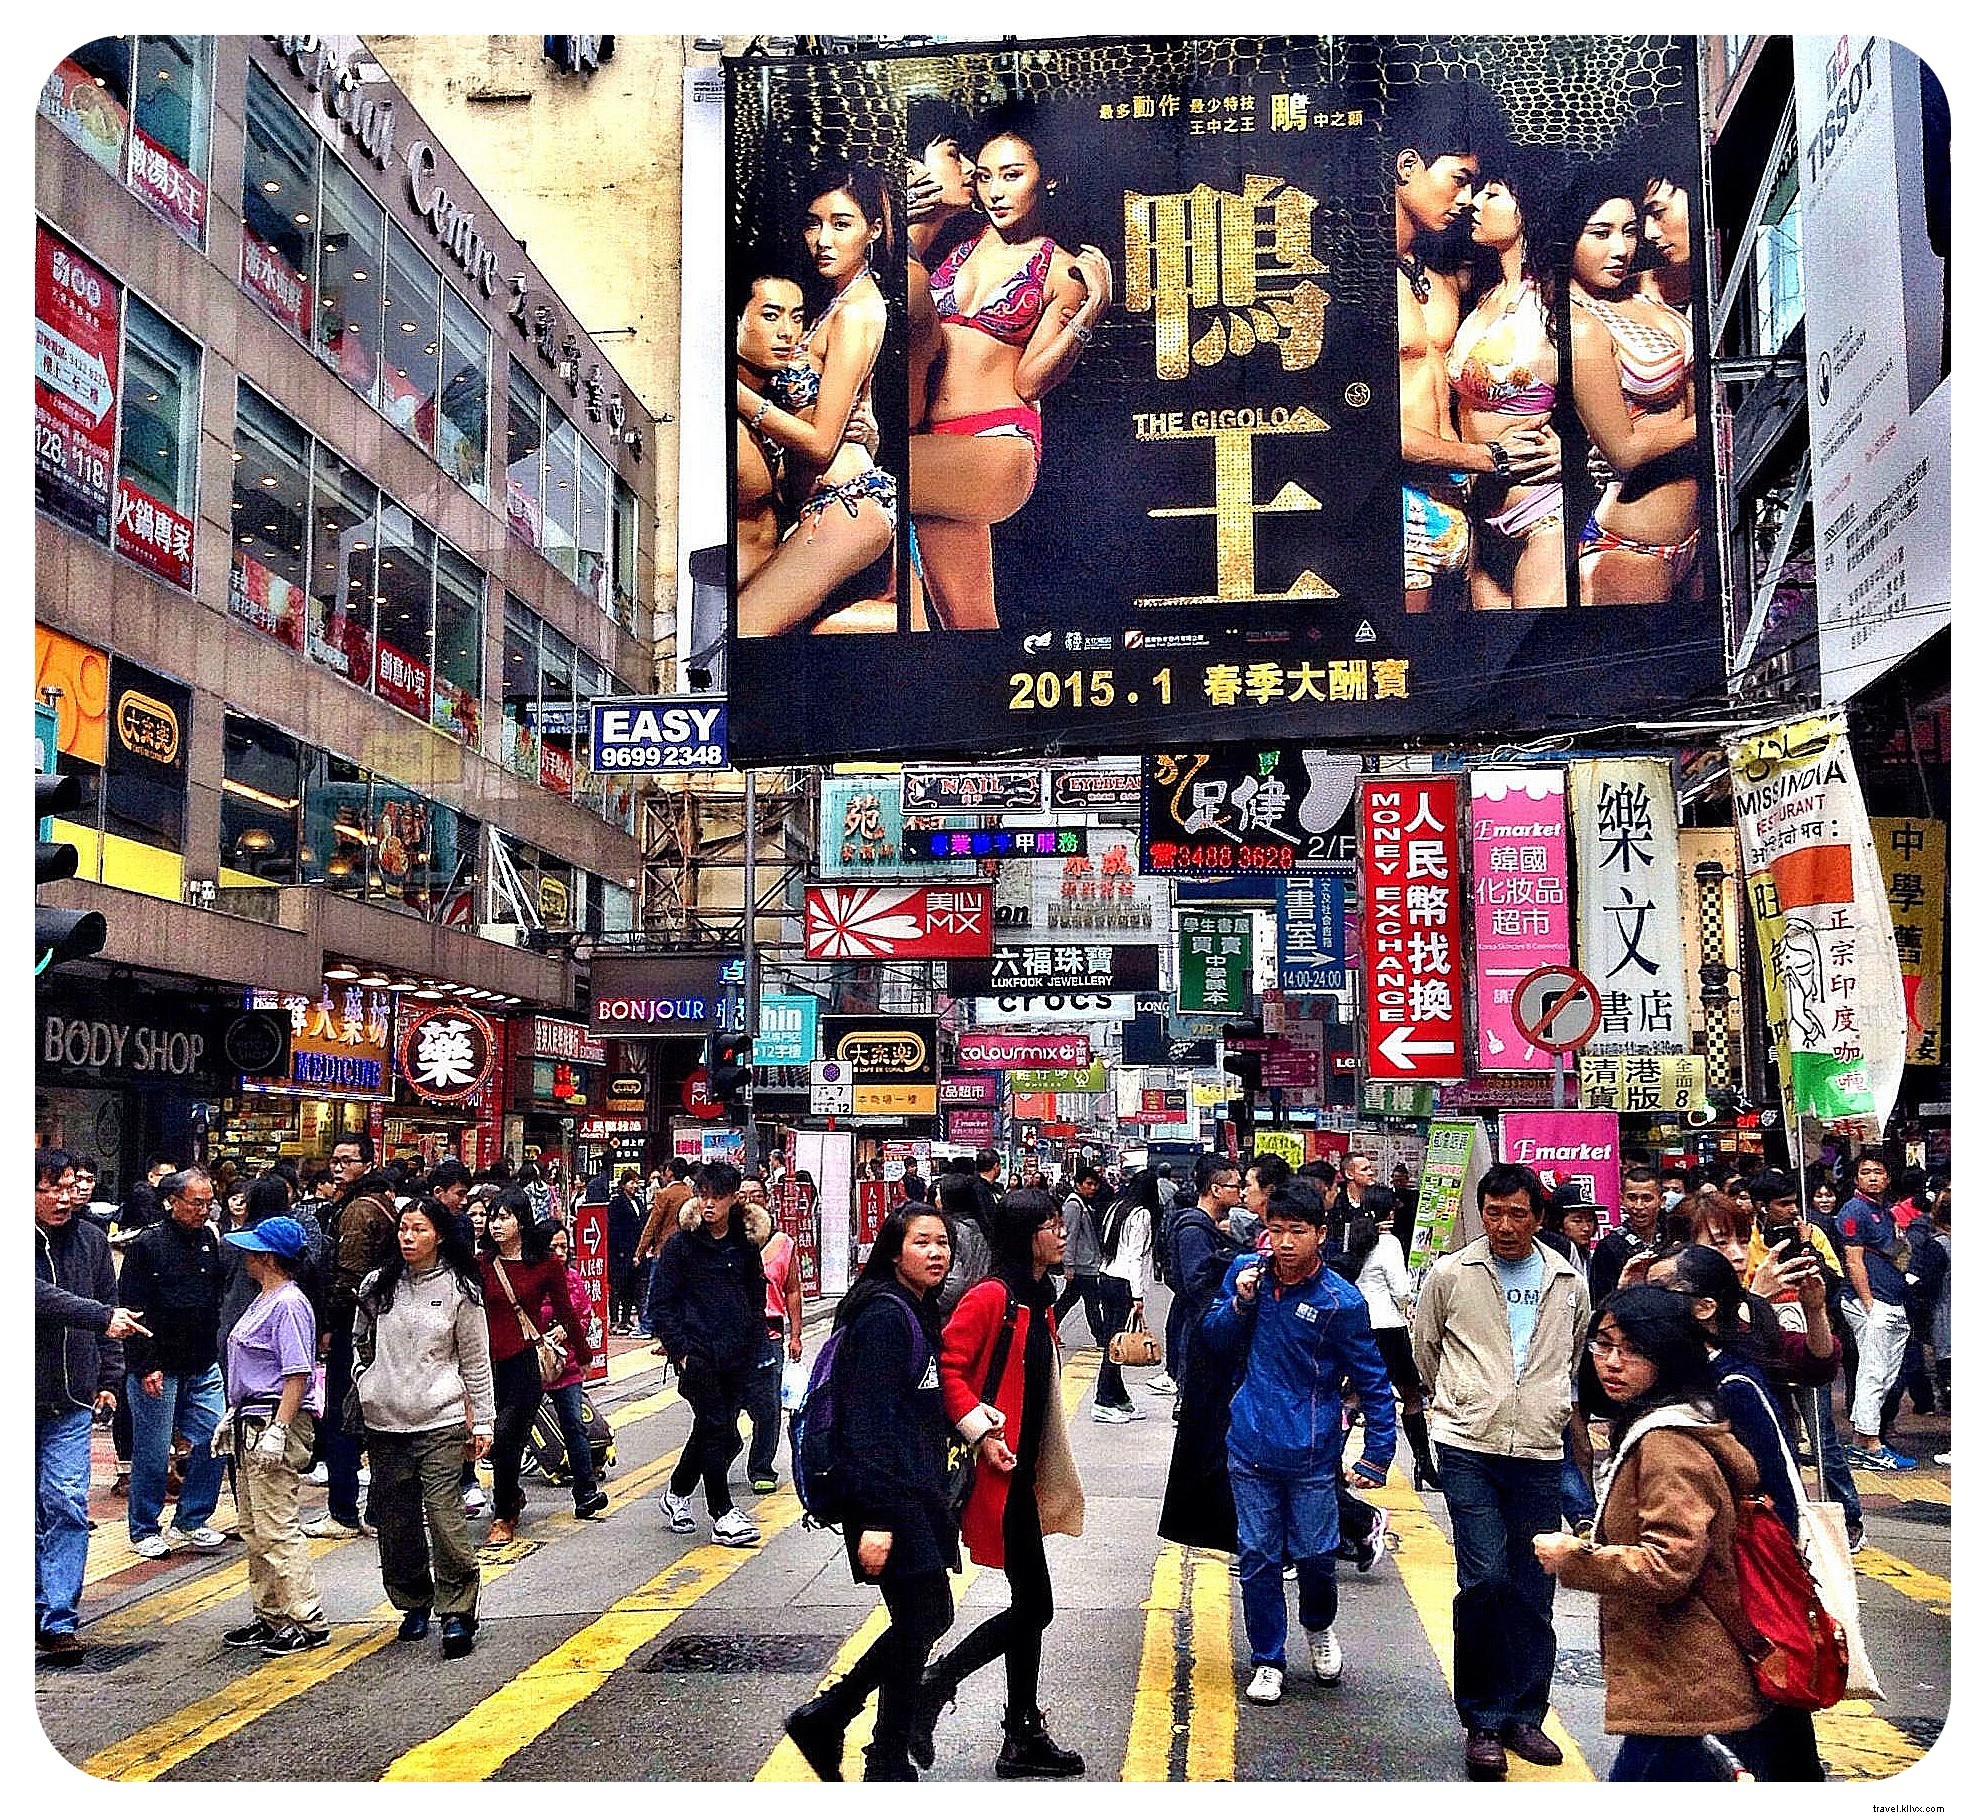 12 choses qui m ont surpris à propos de Hong Kong